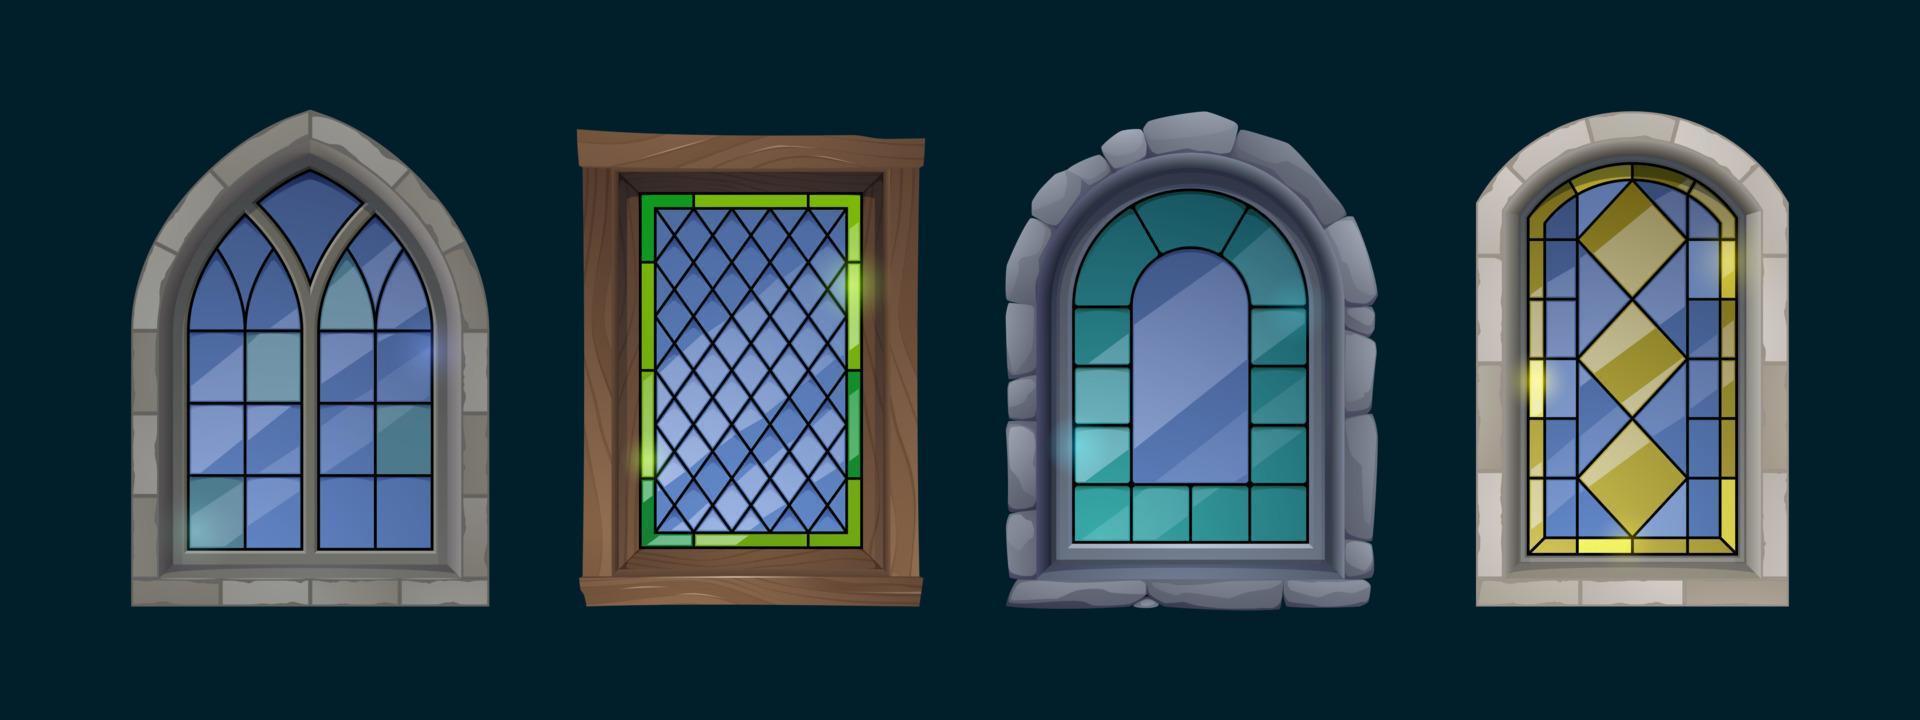 vitraux de dessin animé, église catholique vecteur